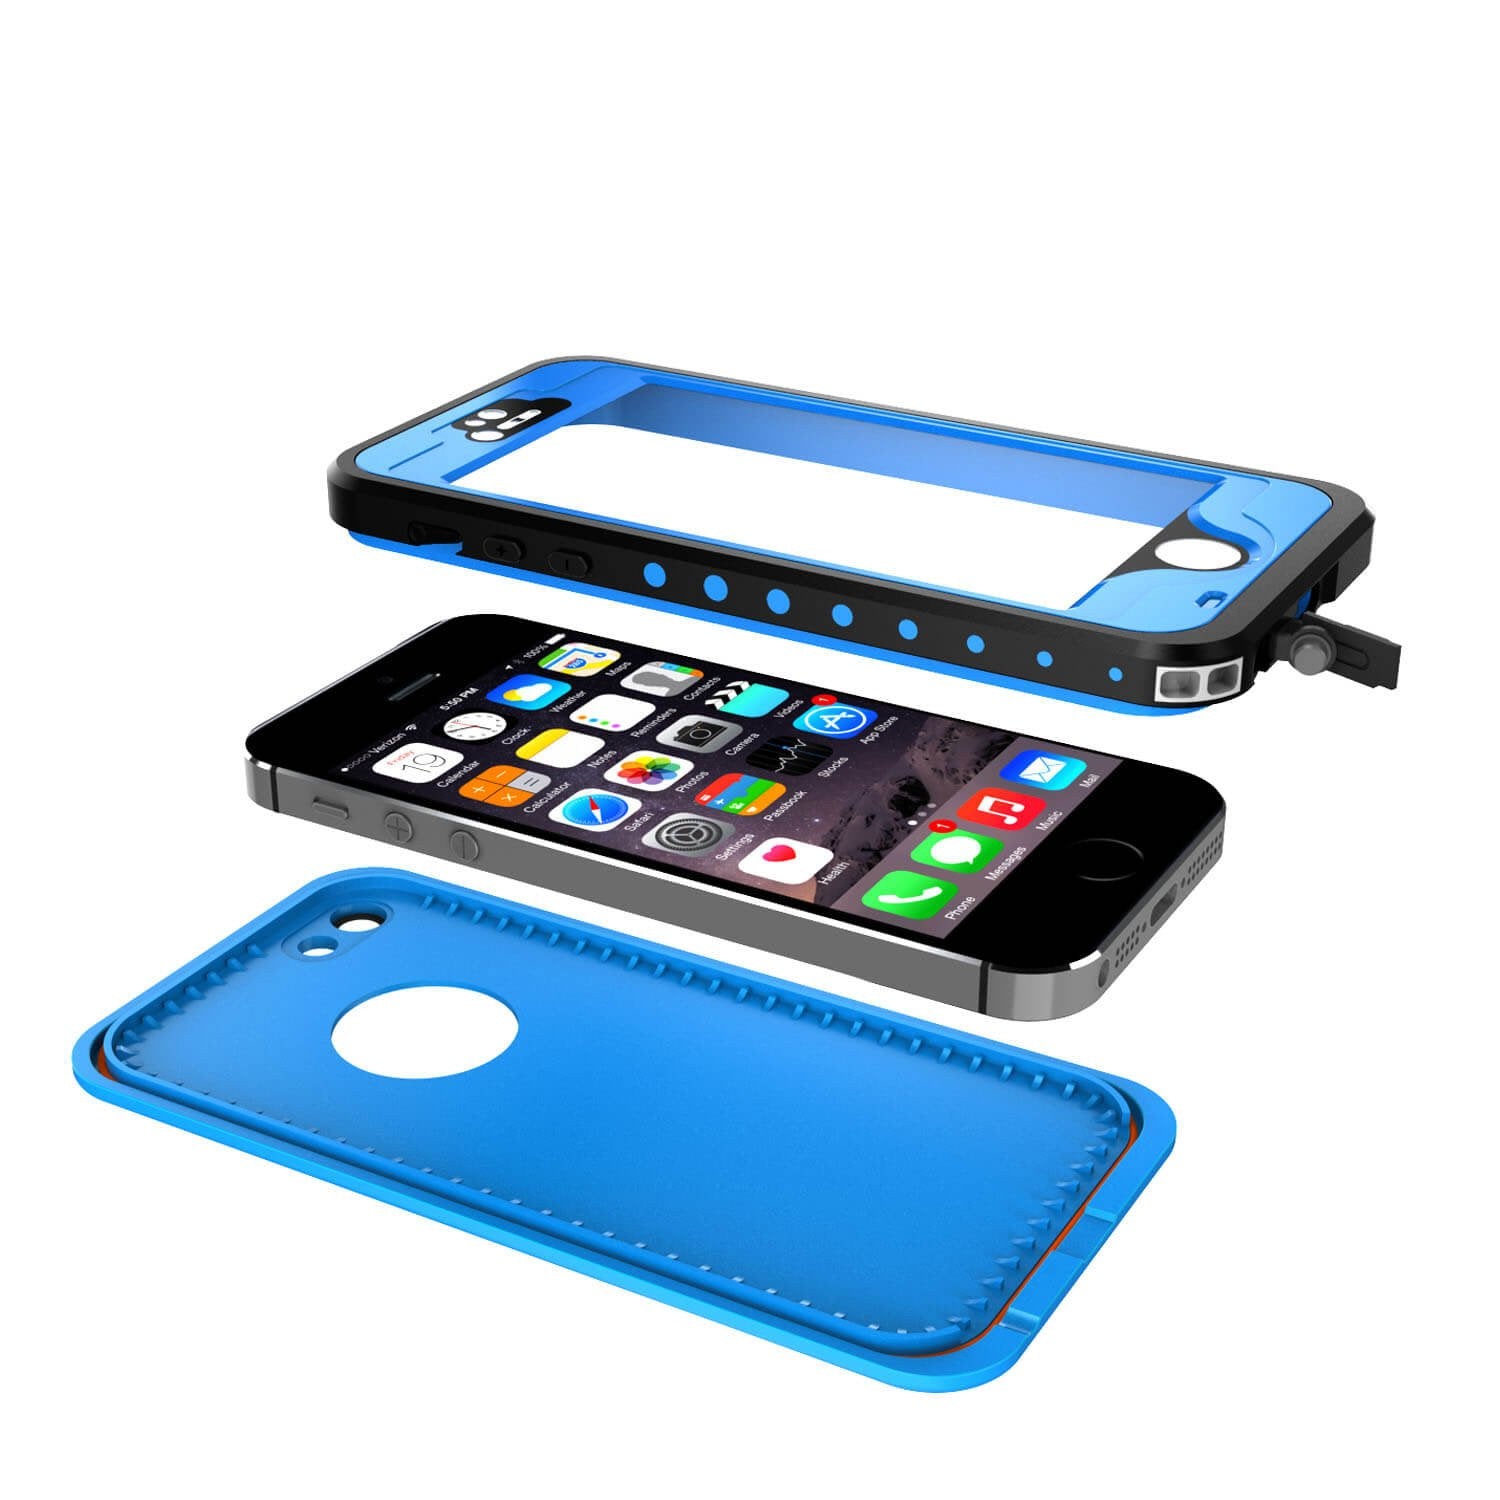 iPhone 5S/5 Waterproof Case, PunkCase StudStar Light Blue Water/Shock/Dirt Proof | Lifetime Warranty